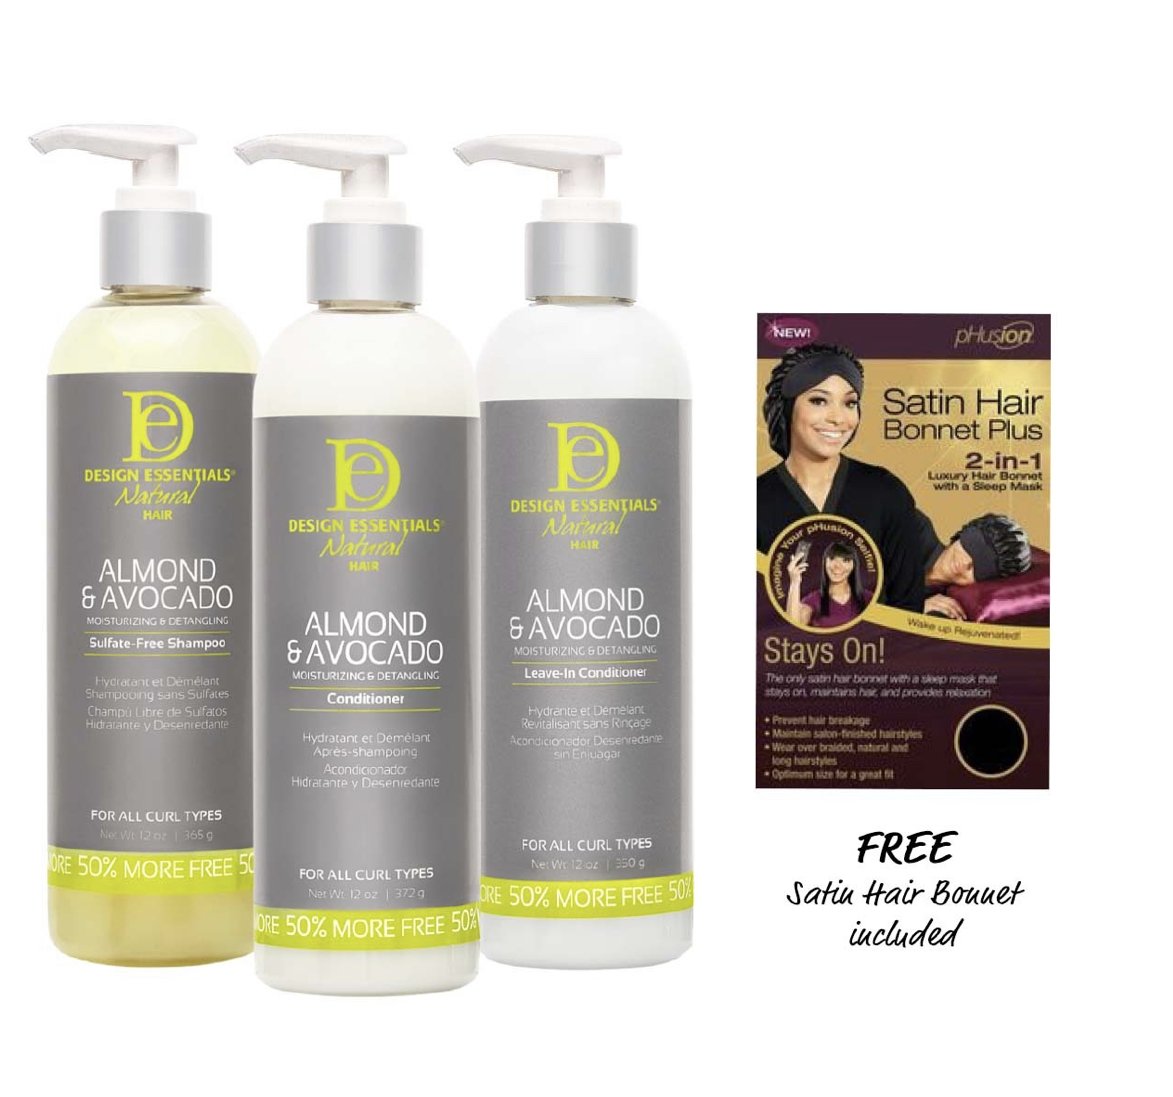 Design Essentials Almond and Avocado Shampoo